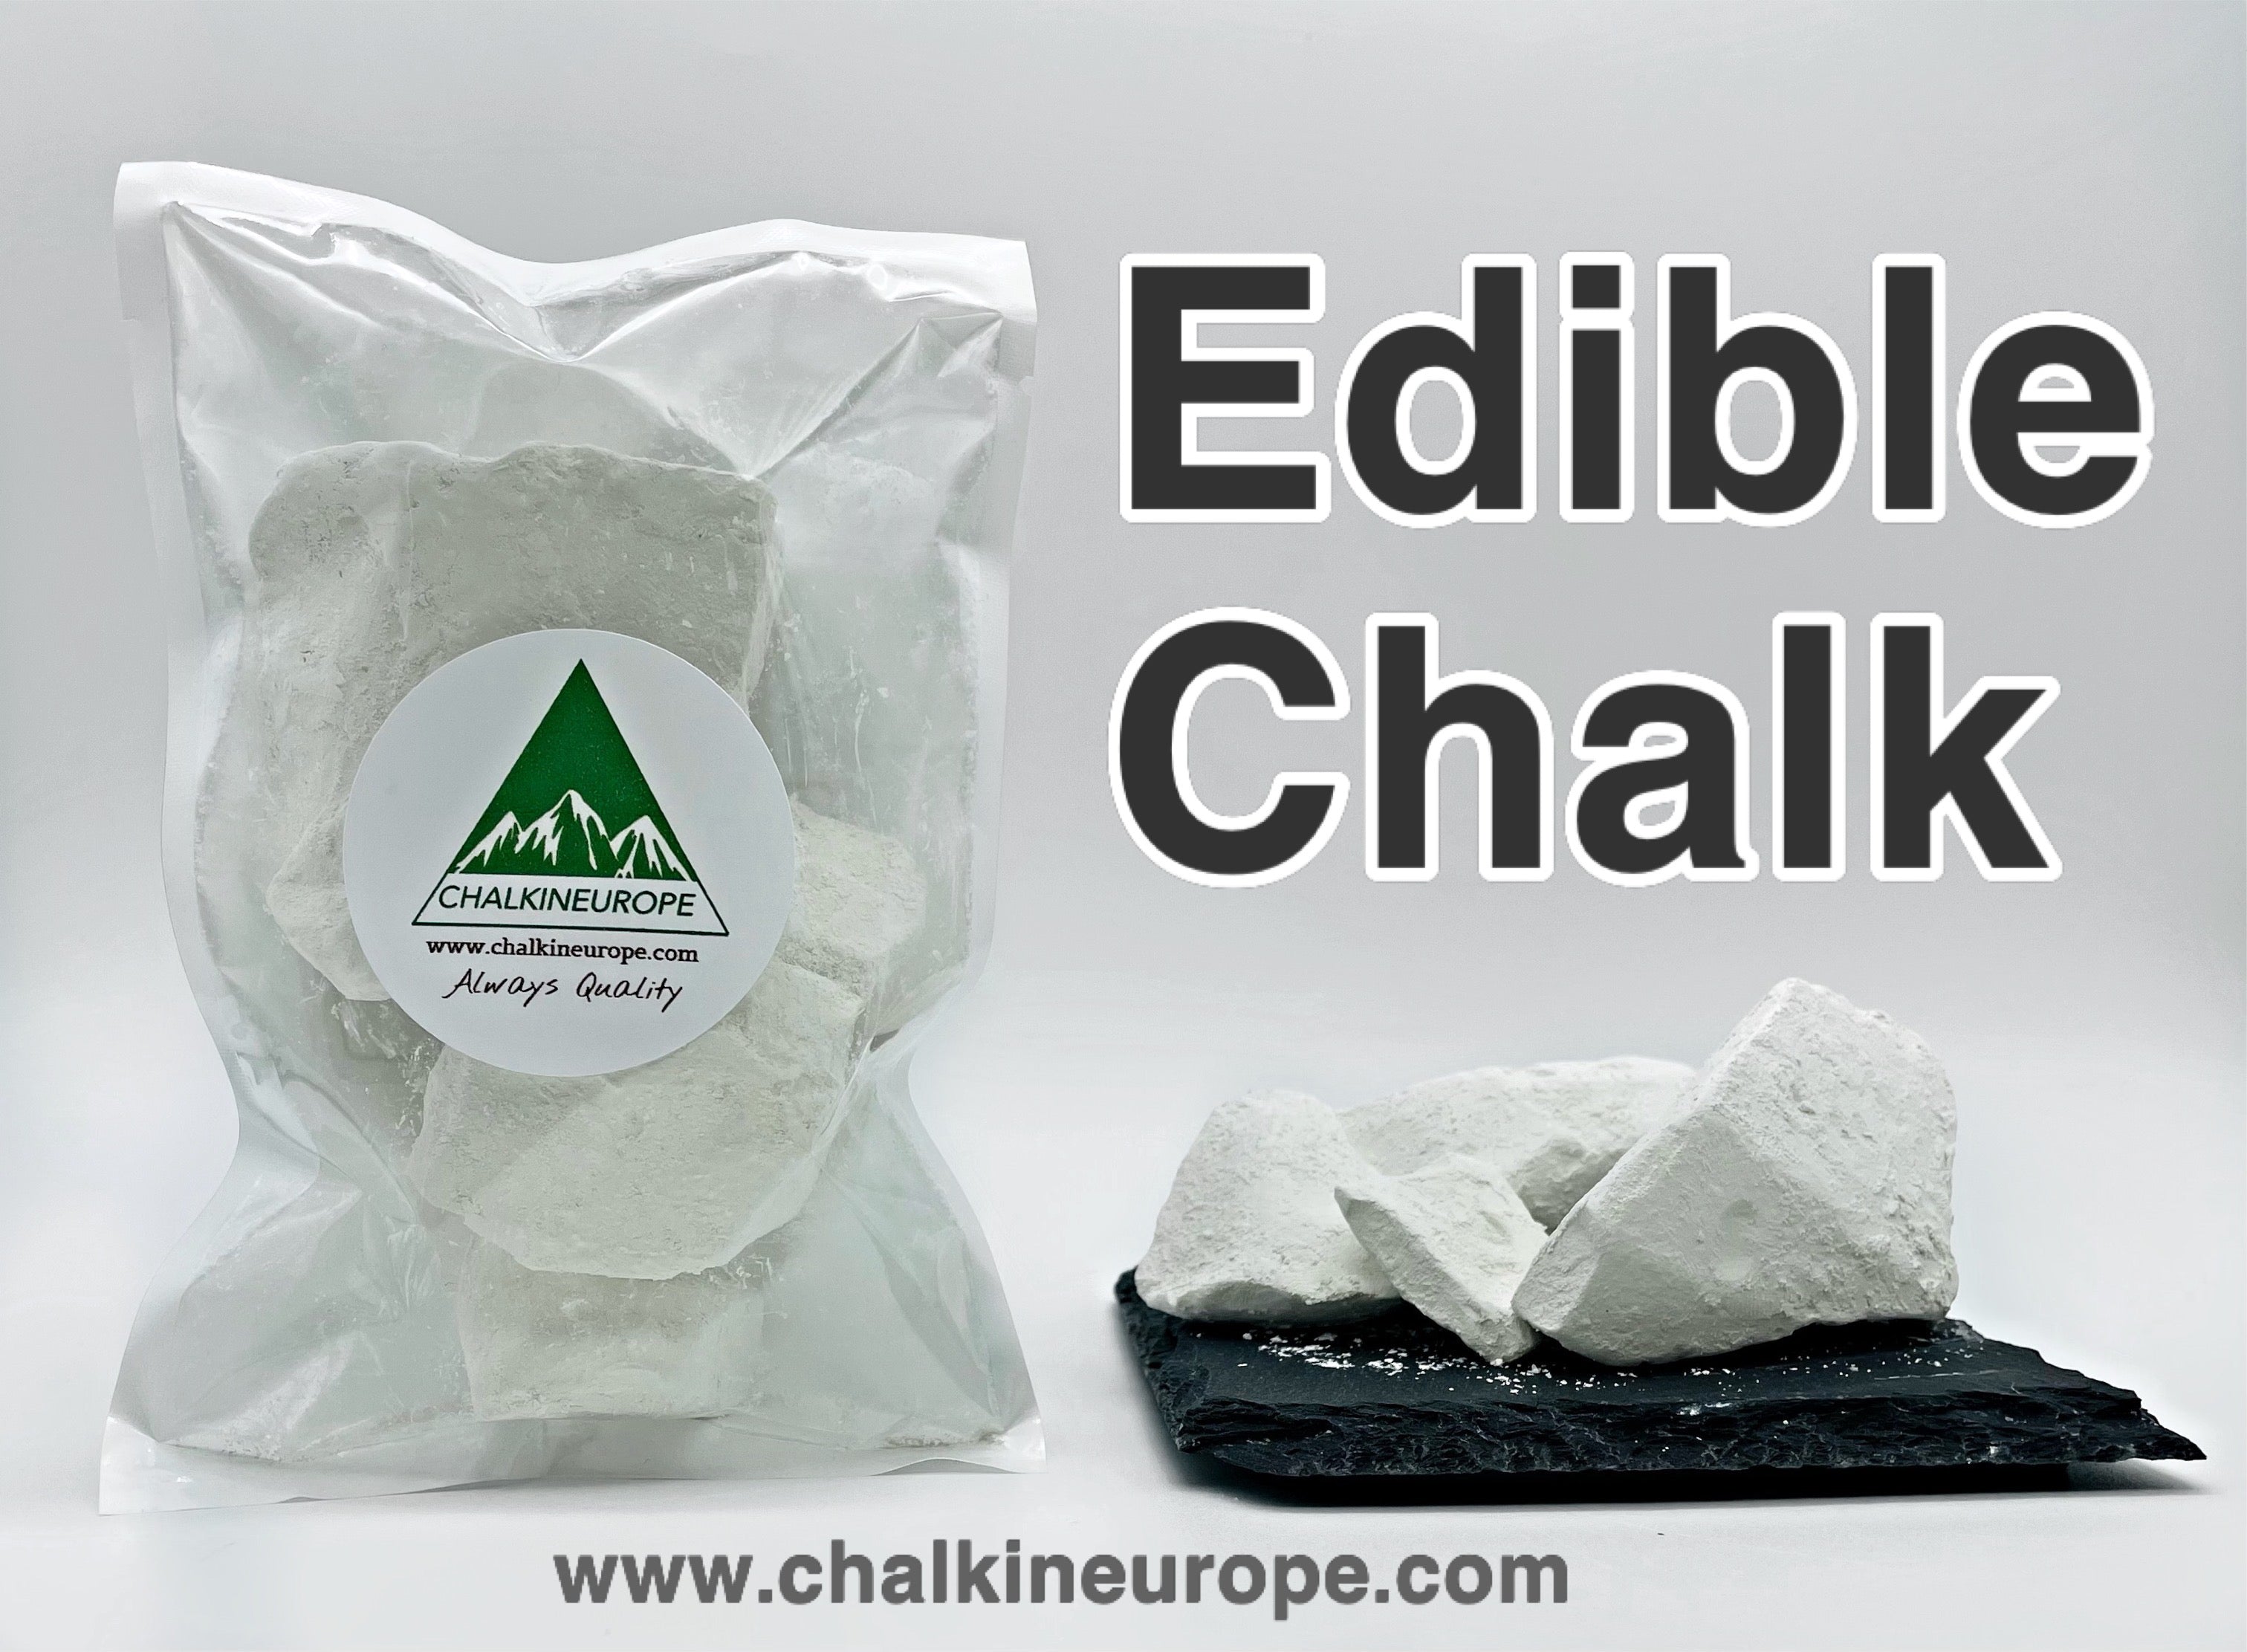 Edible Chalk - Chalkineurope